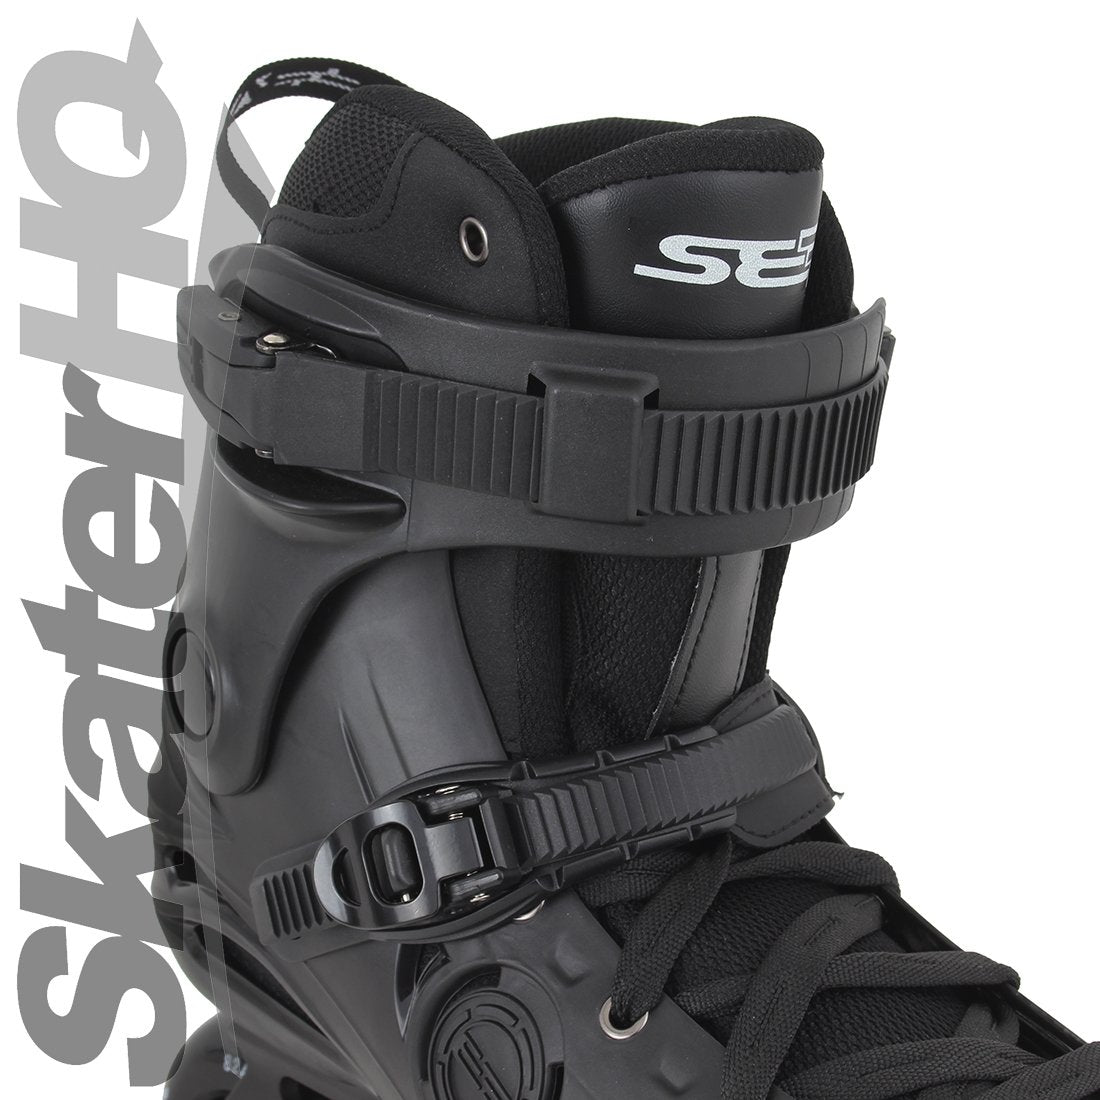 Seba E3 80 Premium Black - 4.5US EU36 Inline Rec Skates